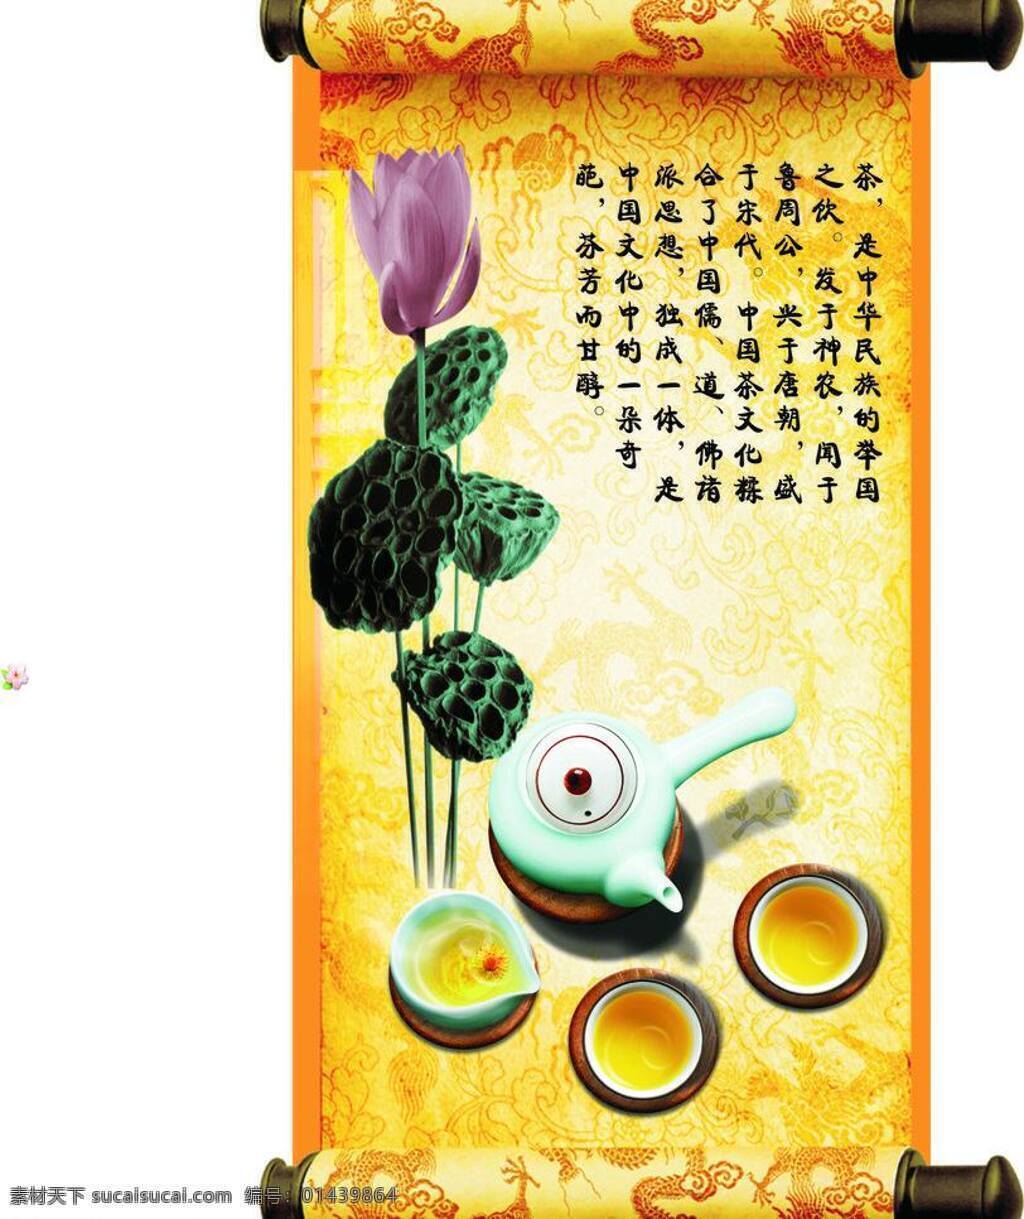 茶 茶壶 茶壶背景 茶文化 荷花 花边 花纹 黄色花边 背景 矢量 模板下载 黄色花纹